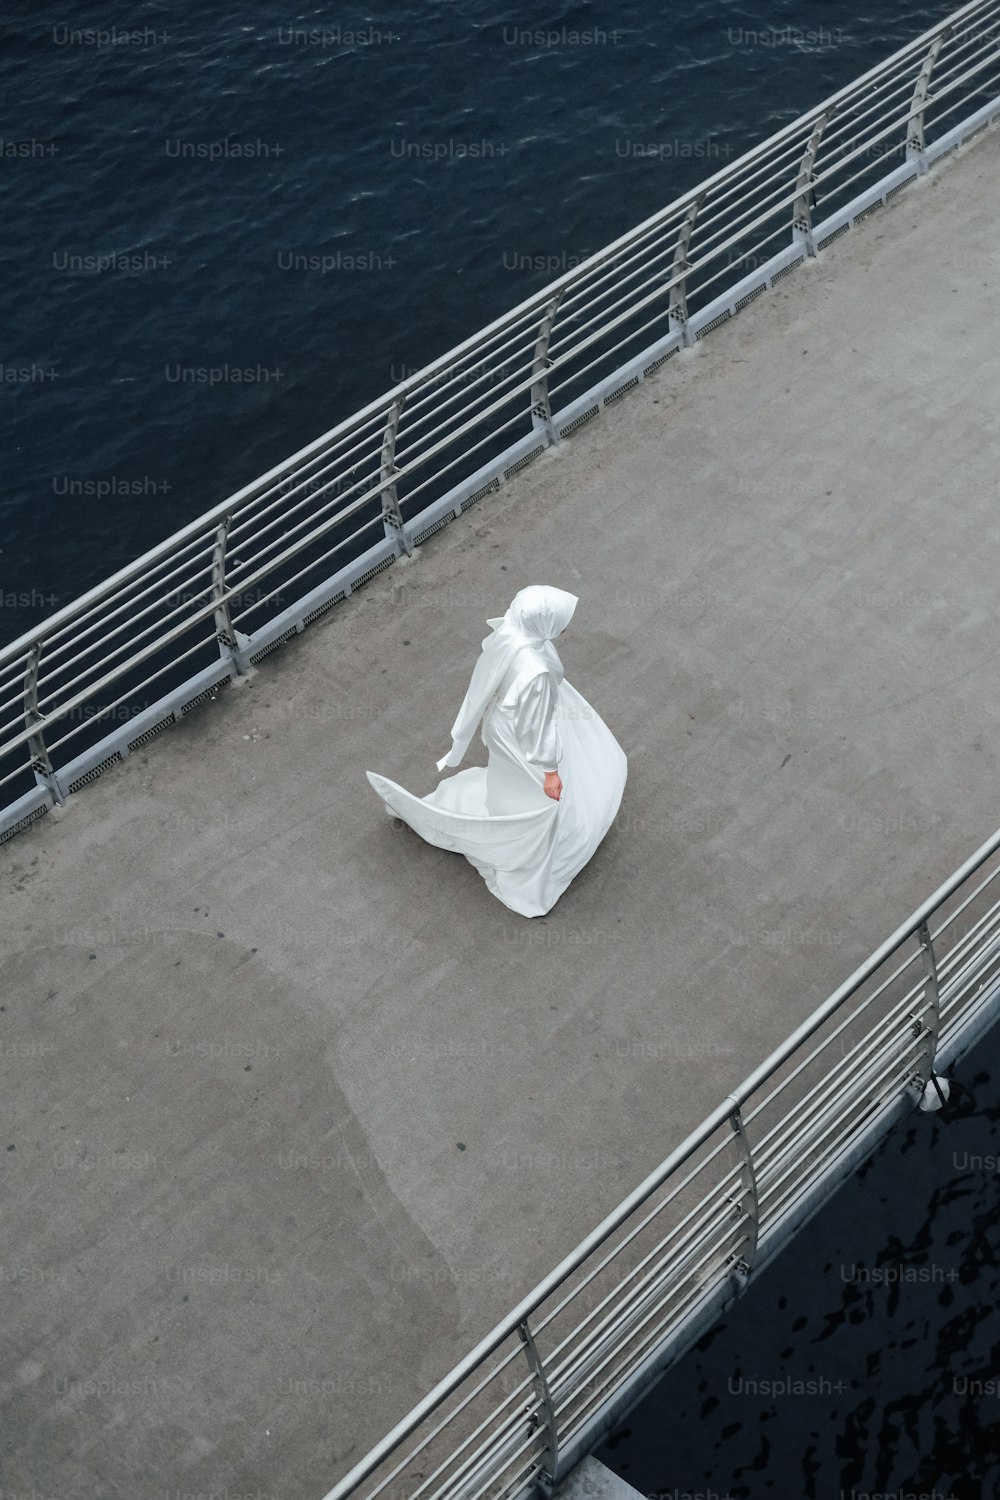 Una estatua de una persona sentada en un puente sobre el agua